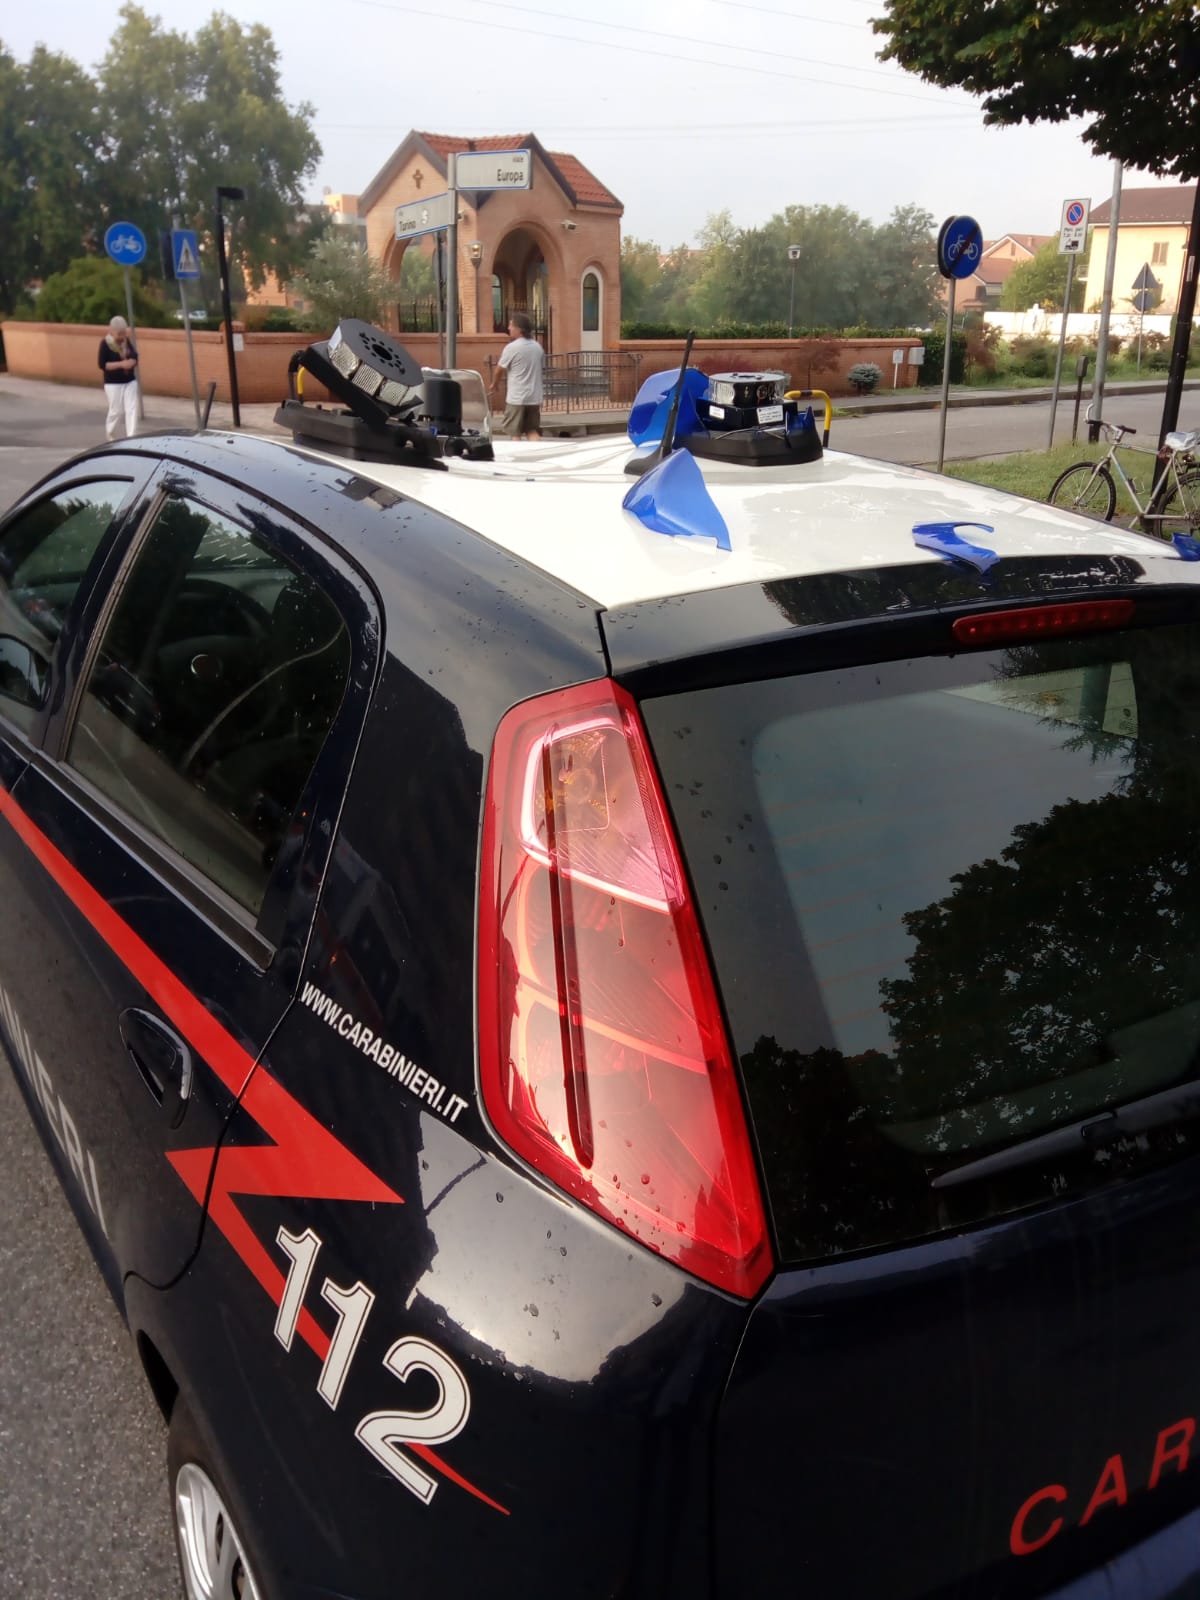 baraonda in piazza a busseo per un 15enne intervenuti i carabinieri